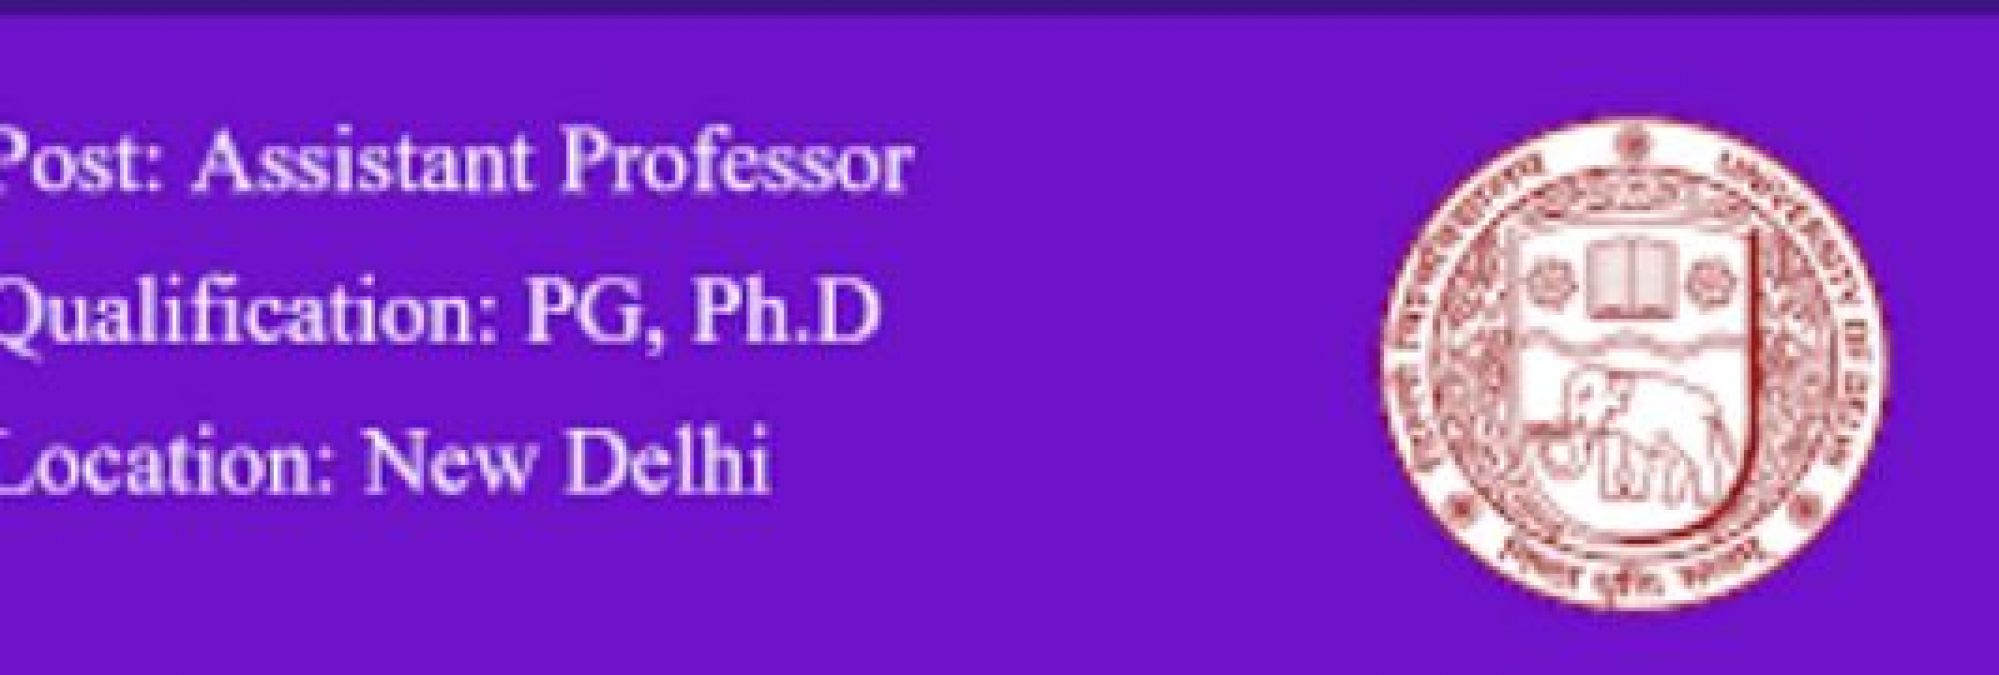 दिल्ली  यूनिवर्सिटी में असिस्टेंट प्रोफेसर के पदों पर निकली भर्तियां, जानें क्या है आवेदन की अंतिम तिथि